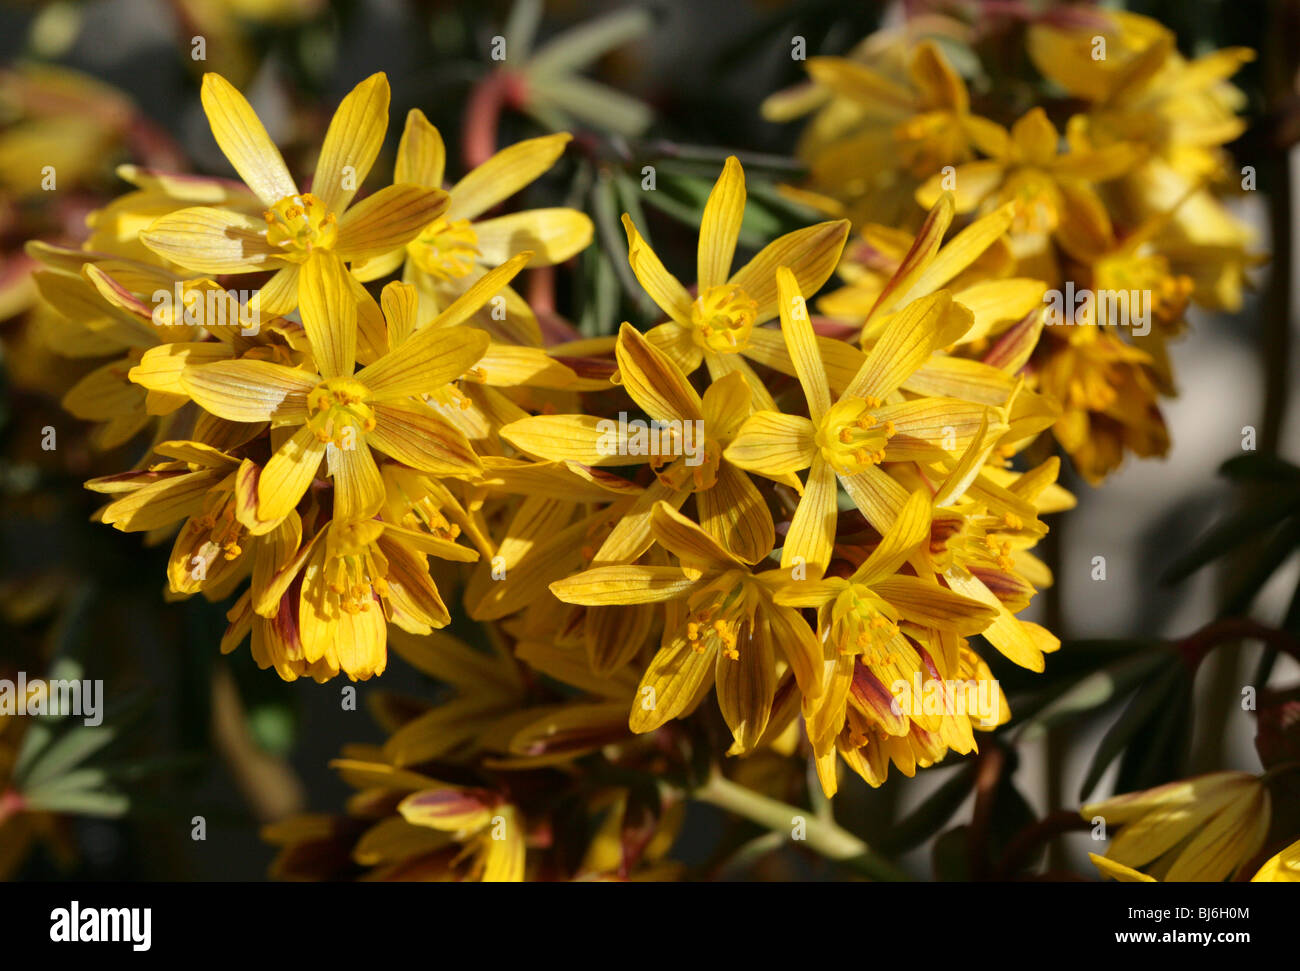 Gymnospermium albertii (Leontice albertii), Berberidaceae, Russian Central Asia Stock Photo